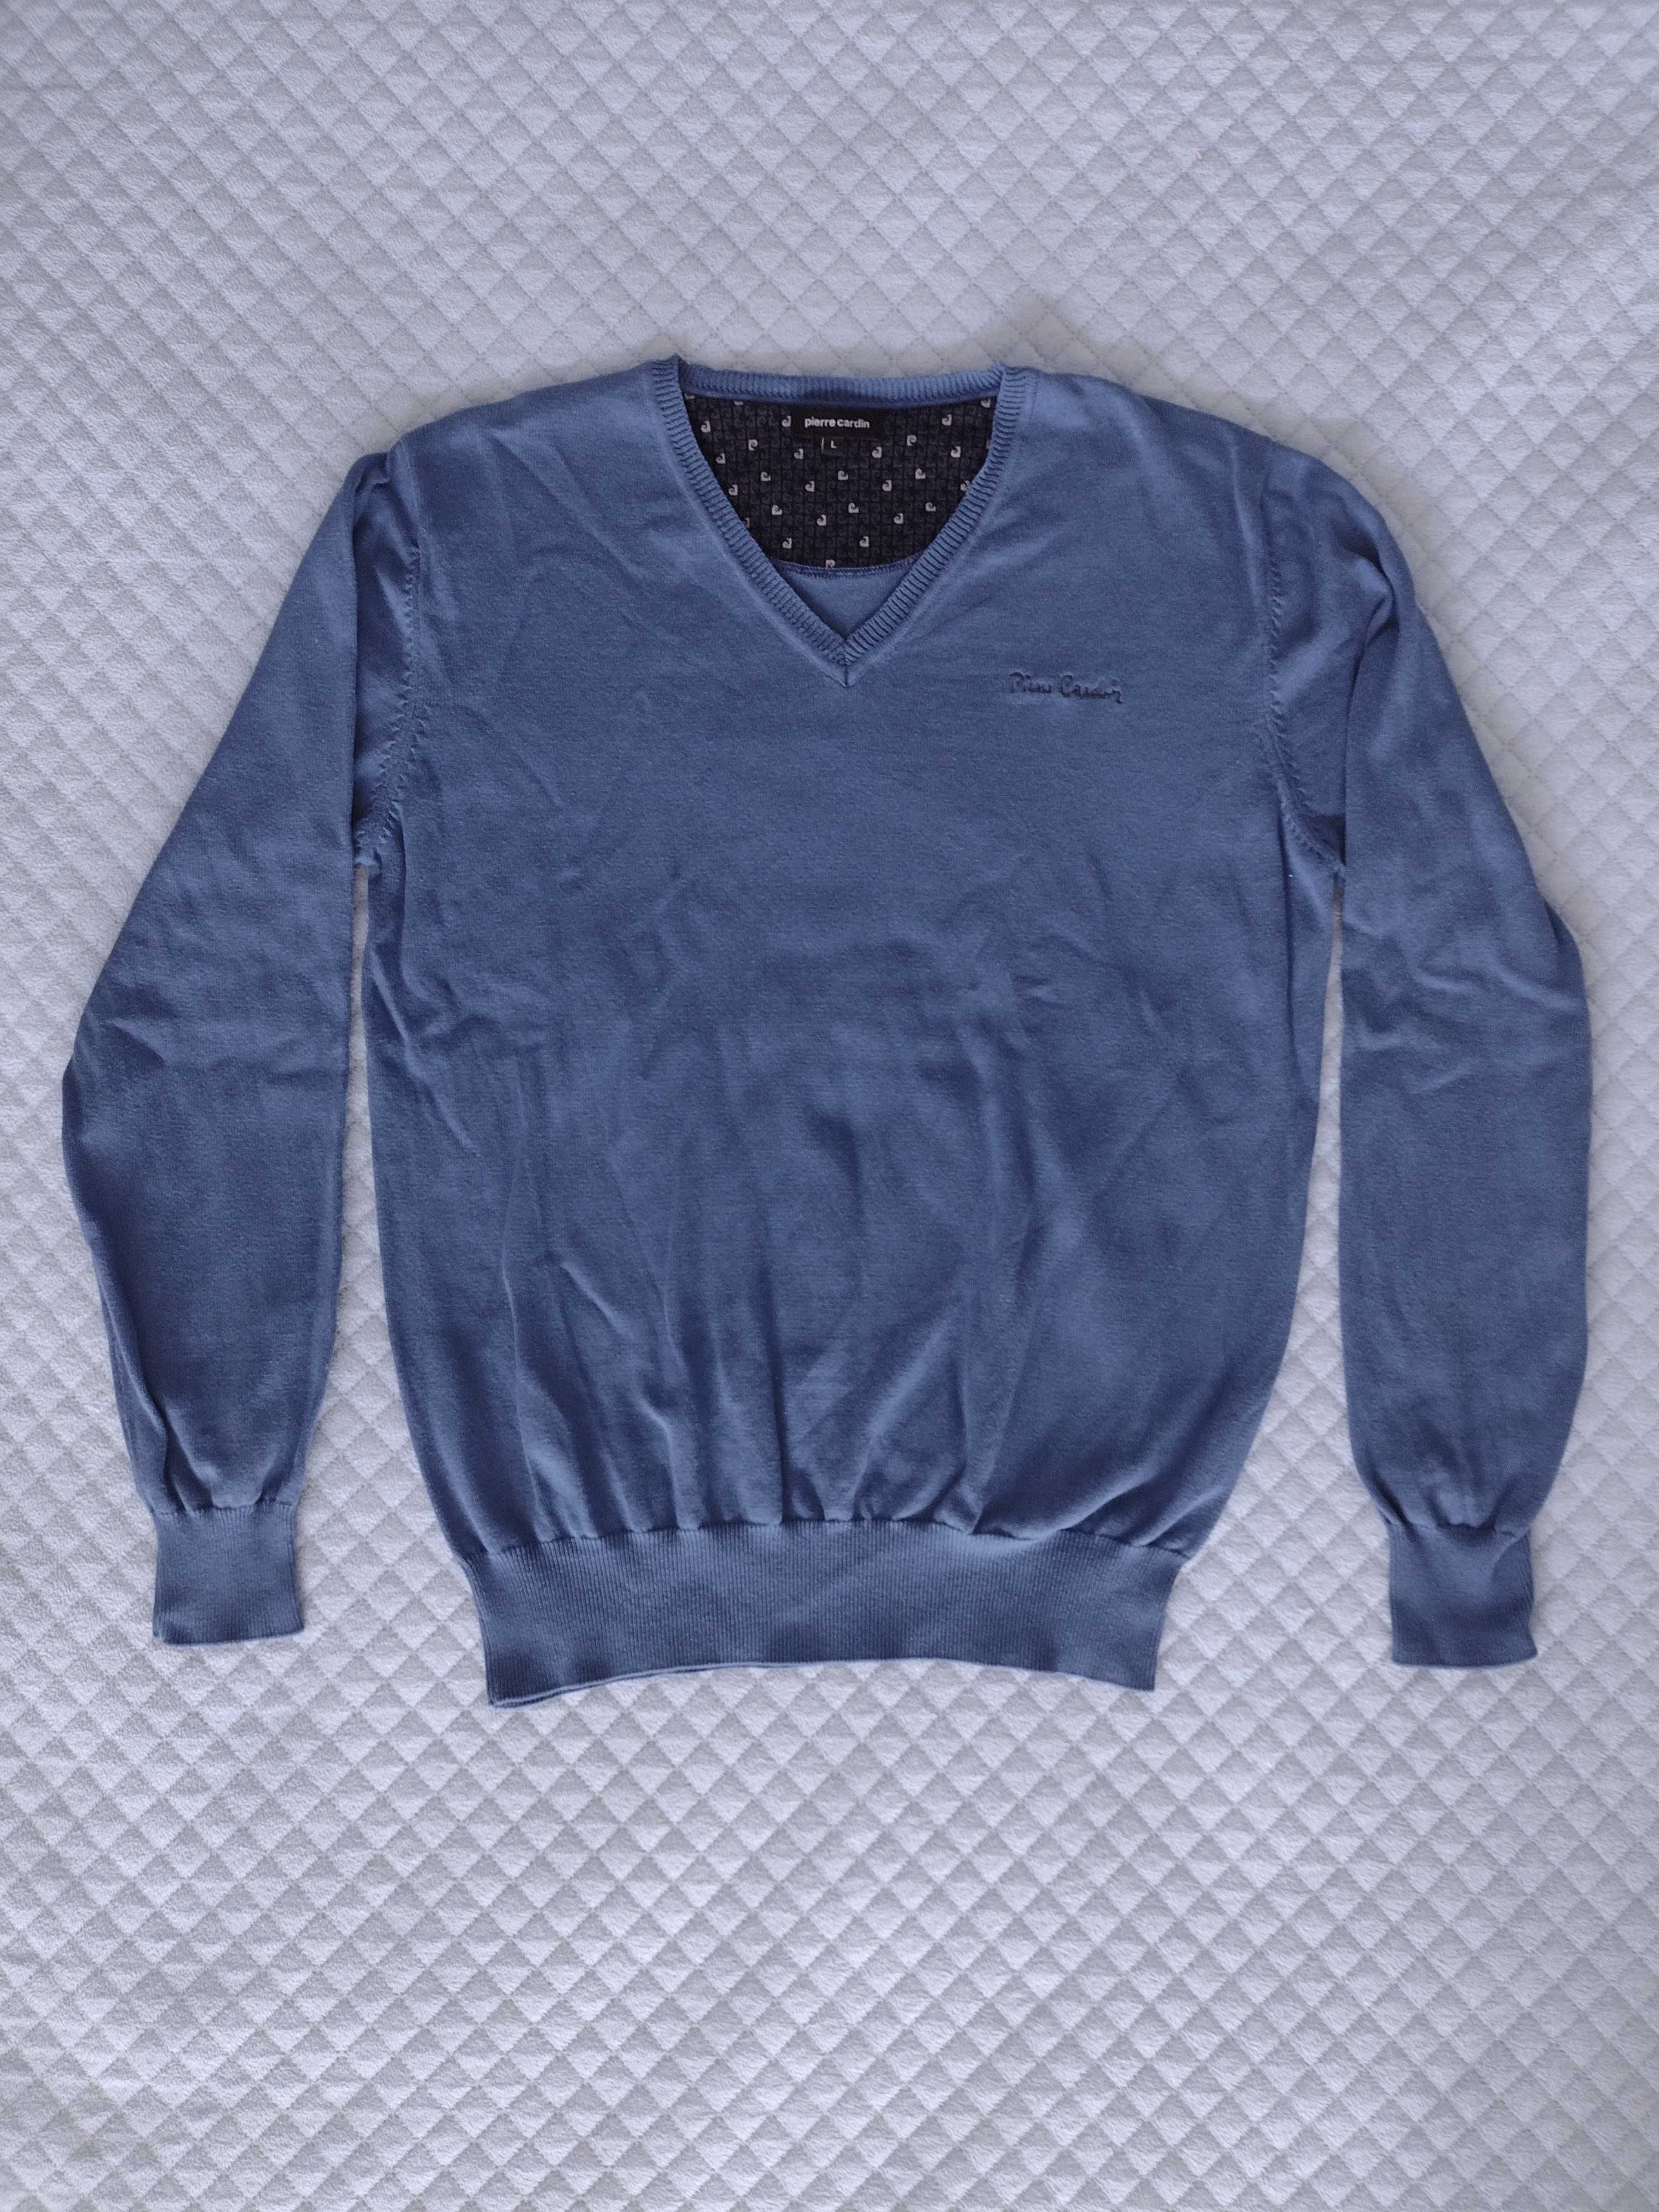 Niebieski sweter Pierre Cardin; NOWY